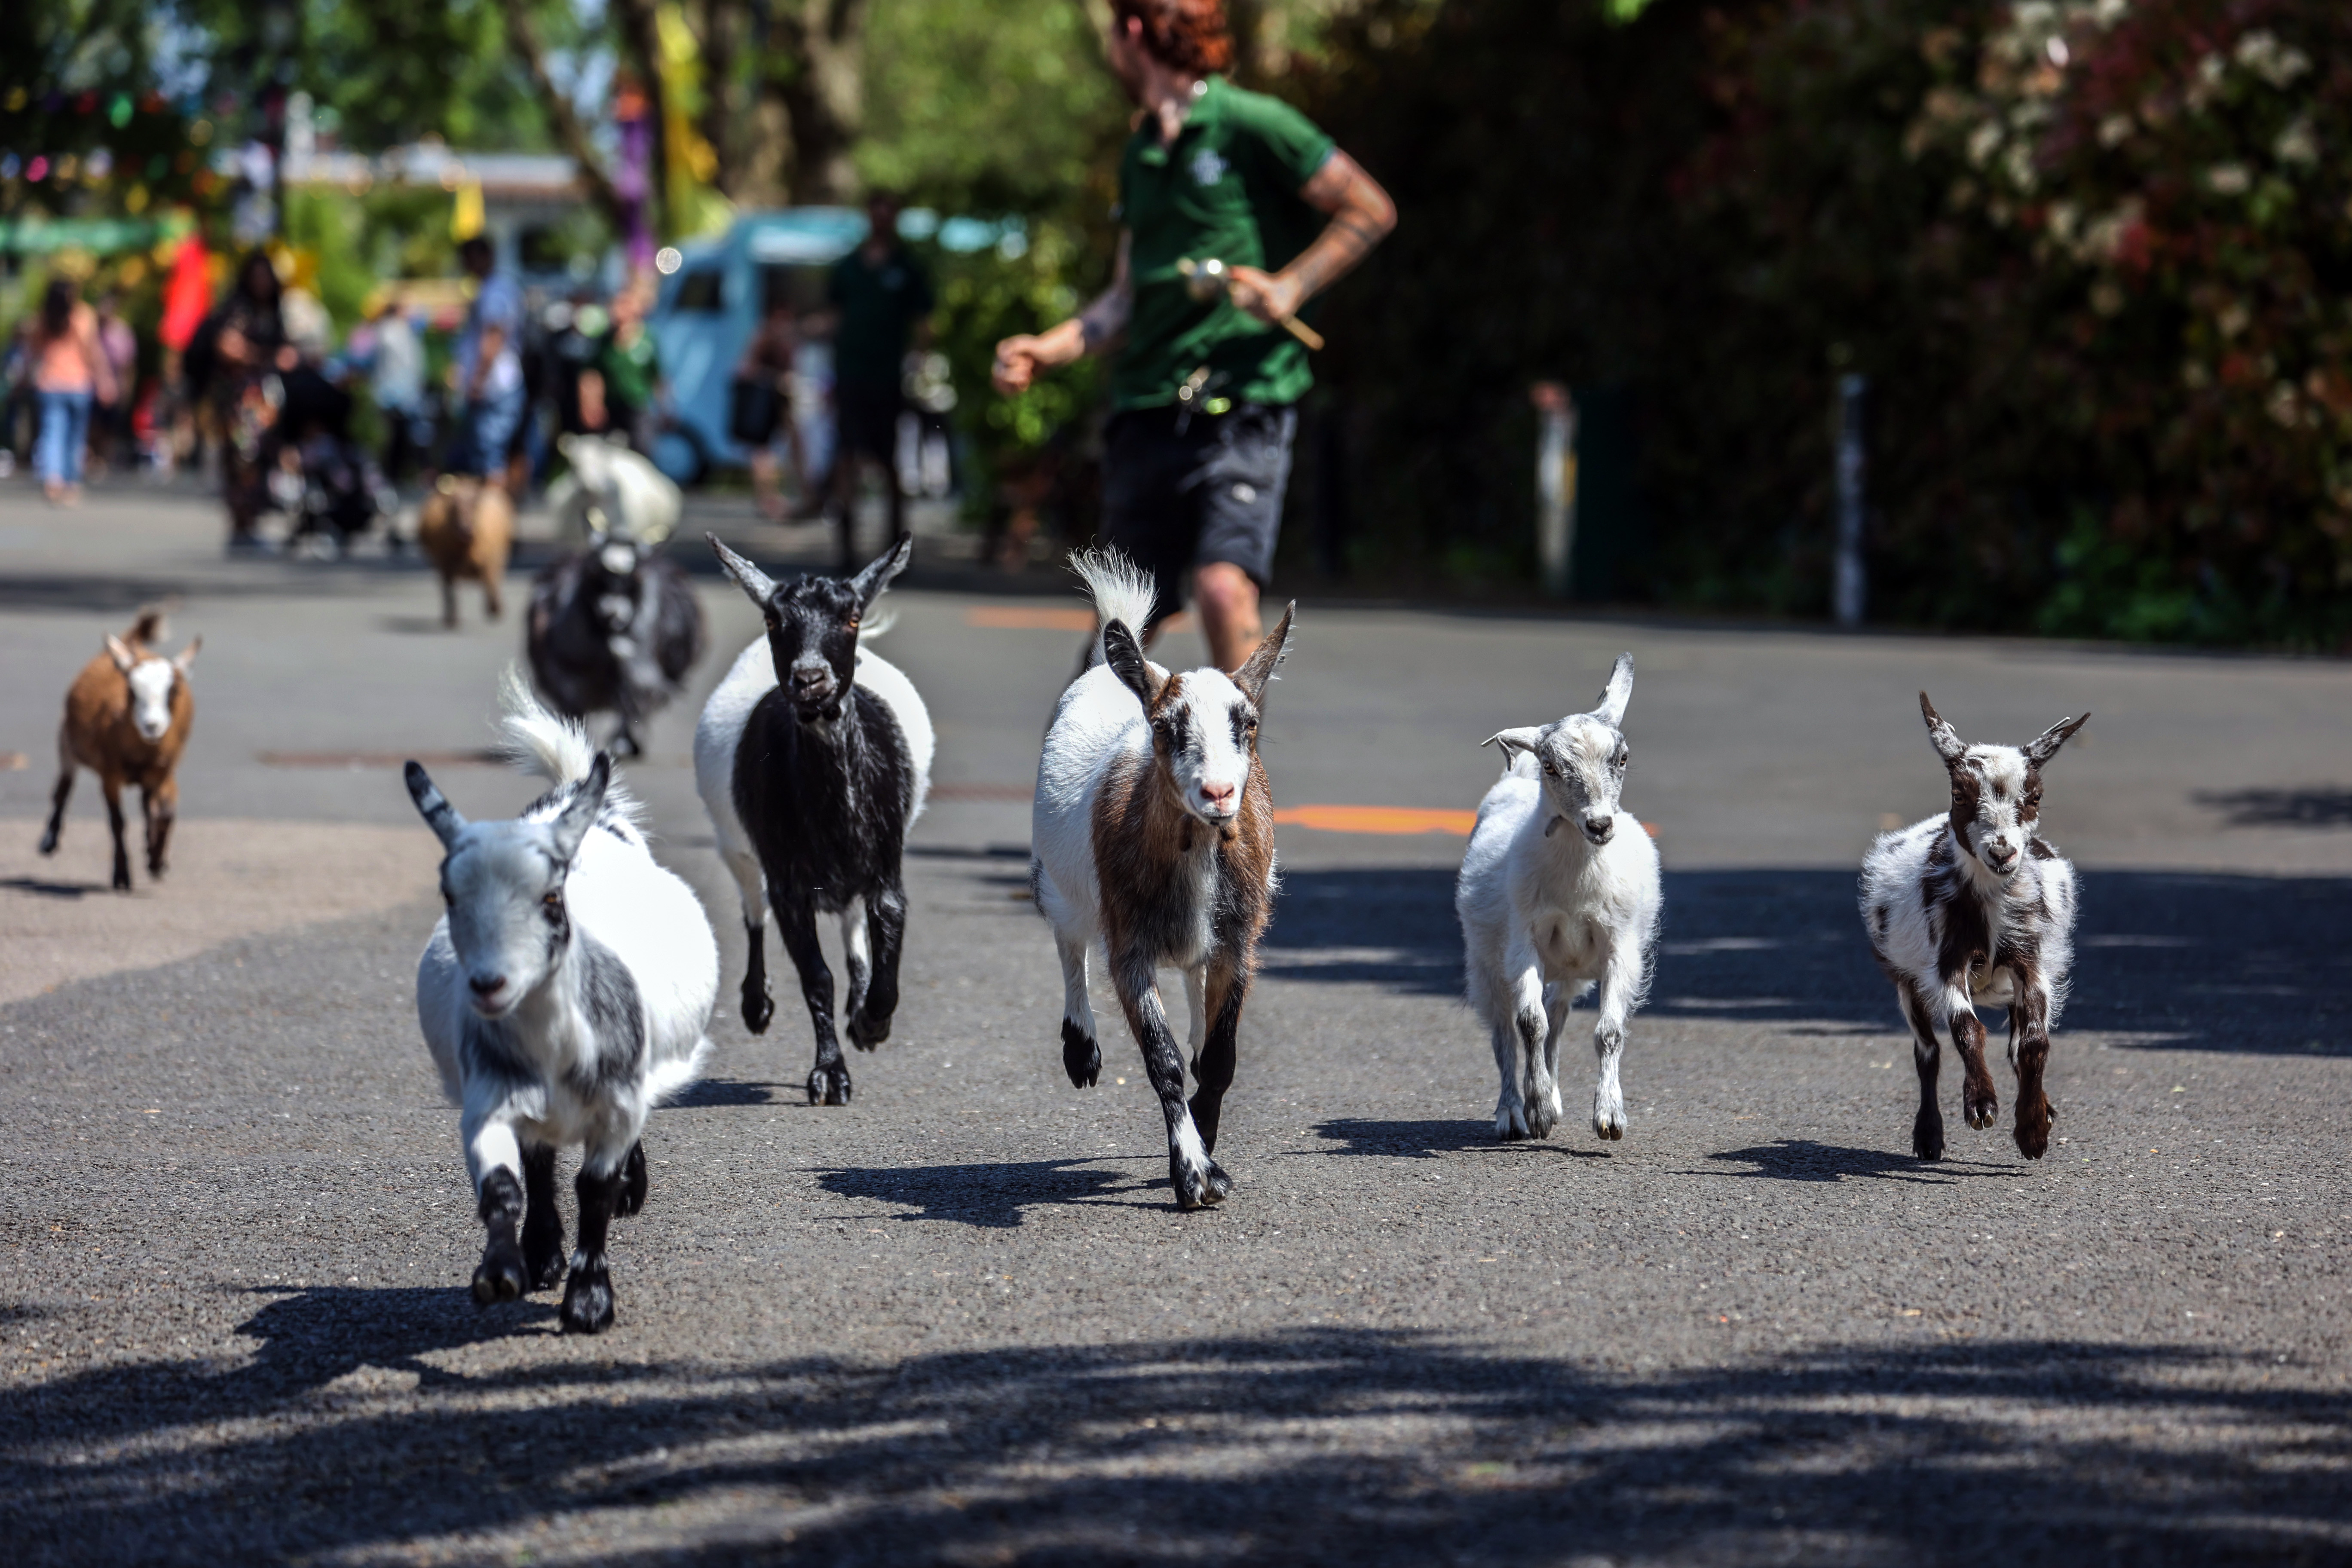 Goats running